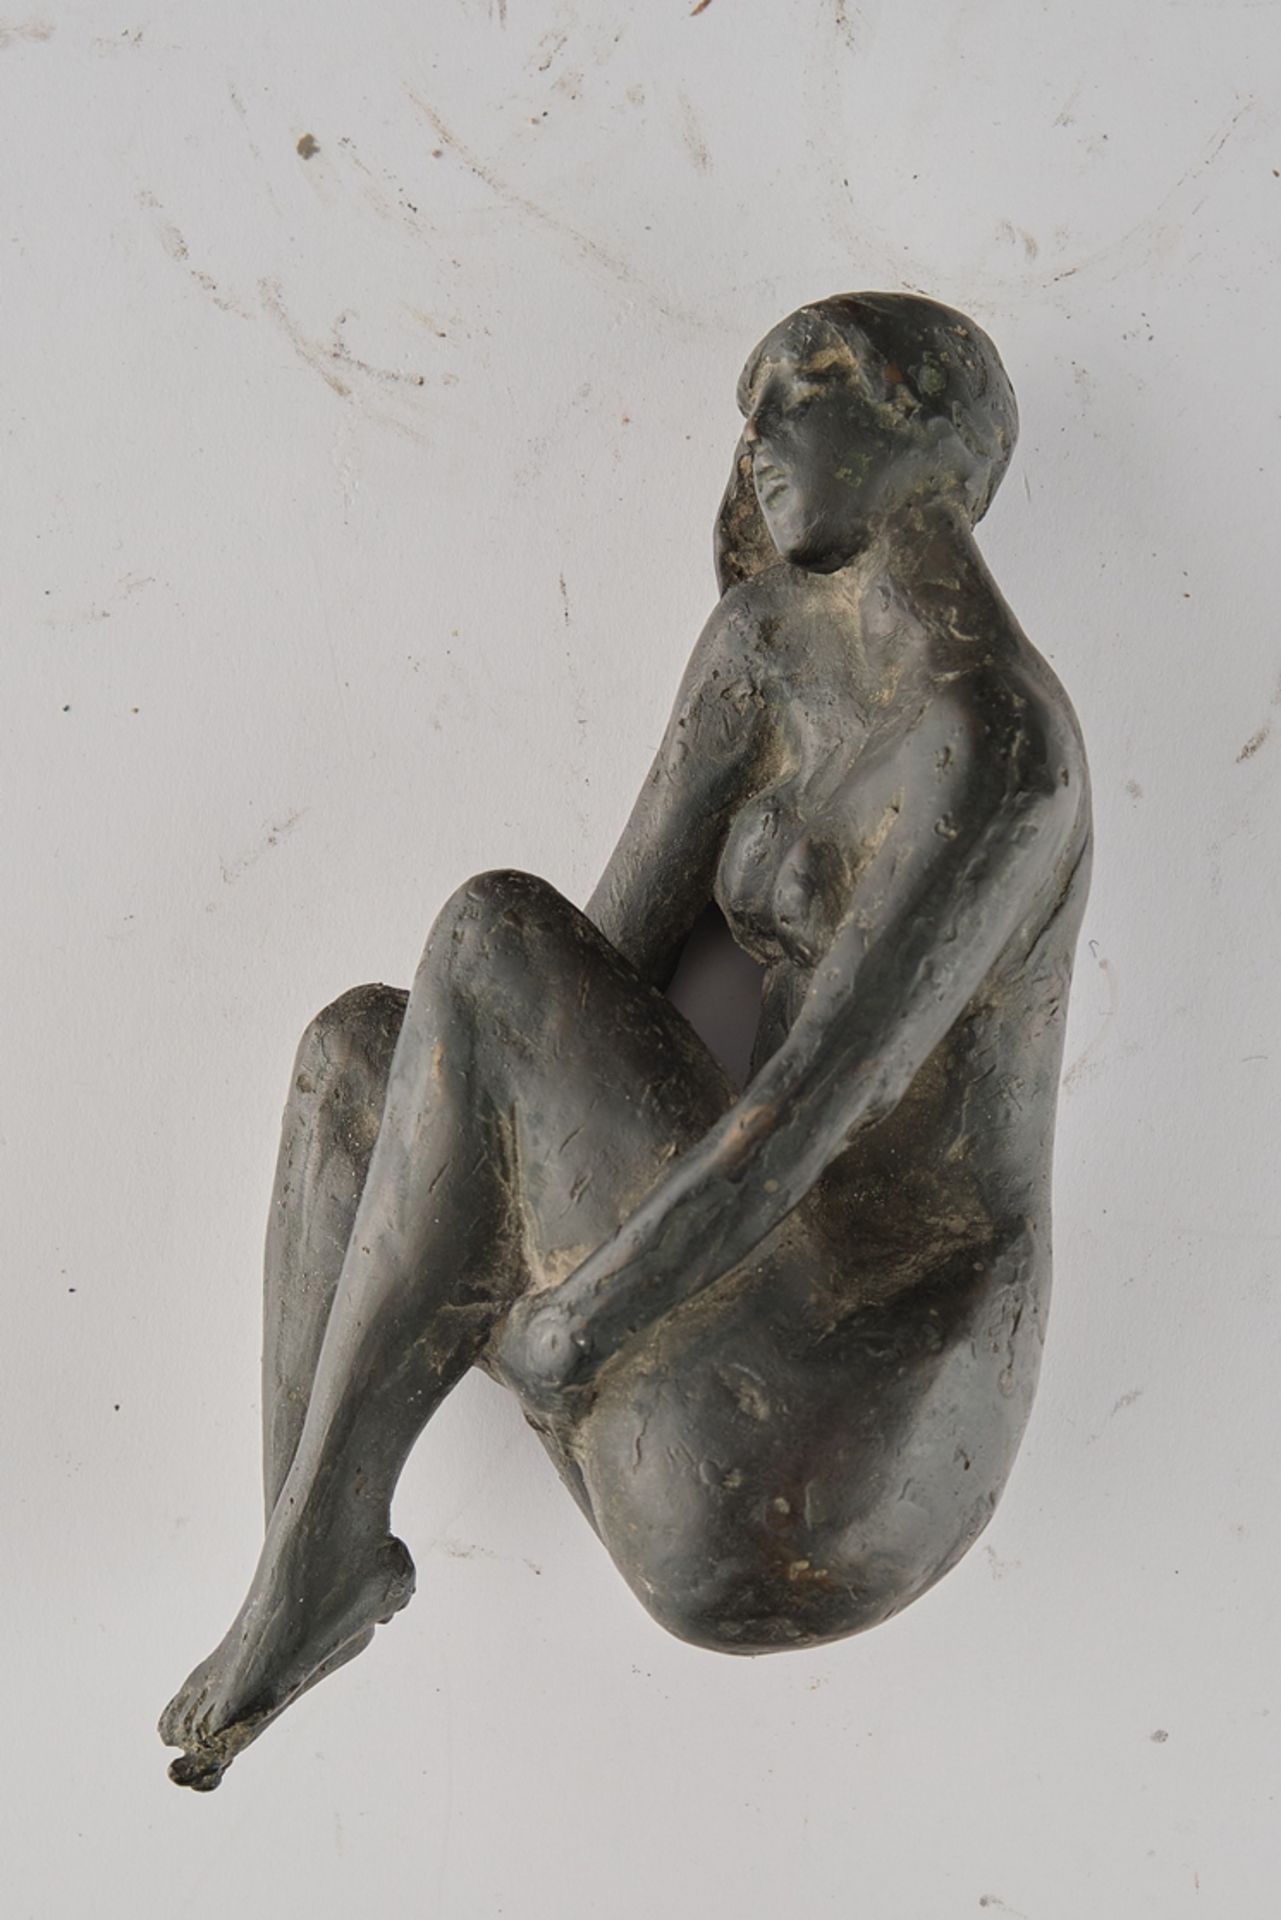 Bronze, "Liegender Akt", dunkel patiniert, 6 cm hoch